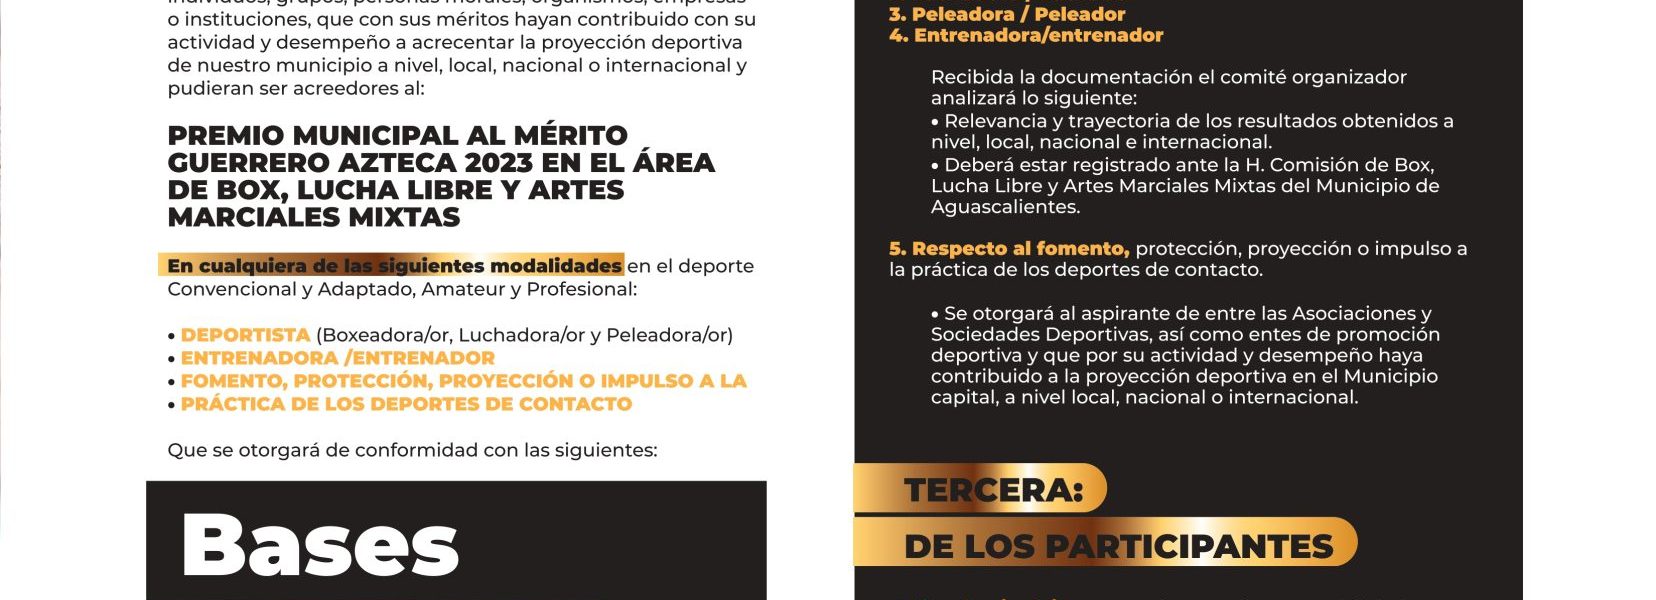 CONVOCA PRESIDENCIA MUNICIPAL A PARTICIPAR POR EL PREMIO AL MÉRITO GUERRERO AZTECA 2023